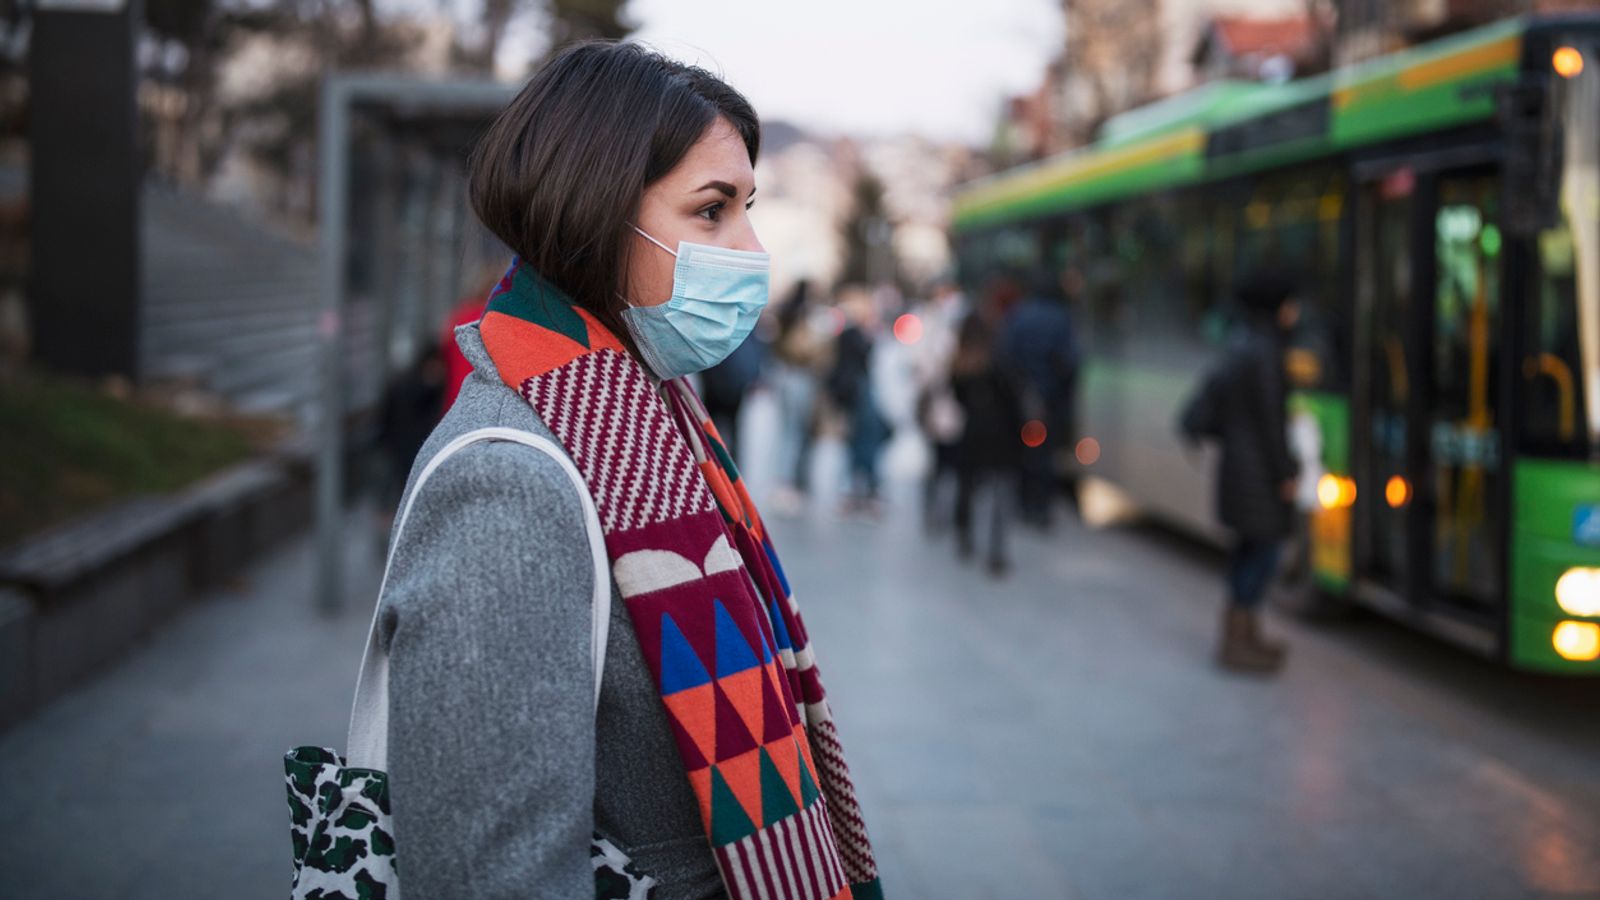 Médico advierte que la contaminación del aire puede aumentar el riesgo de propagación de Covid-19 |  noticias del mundo